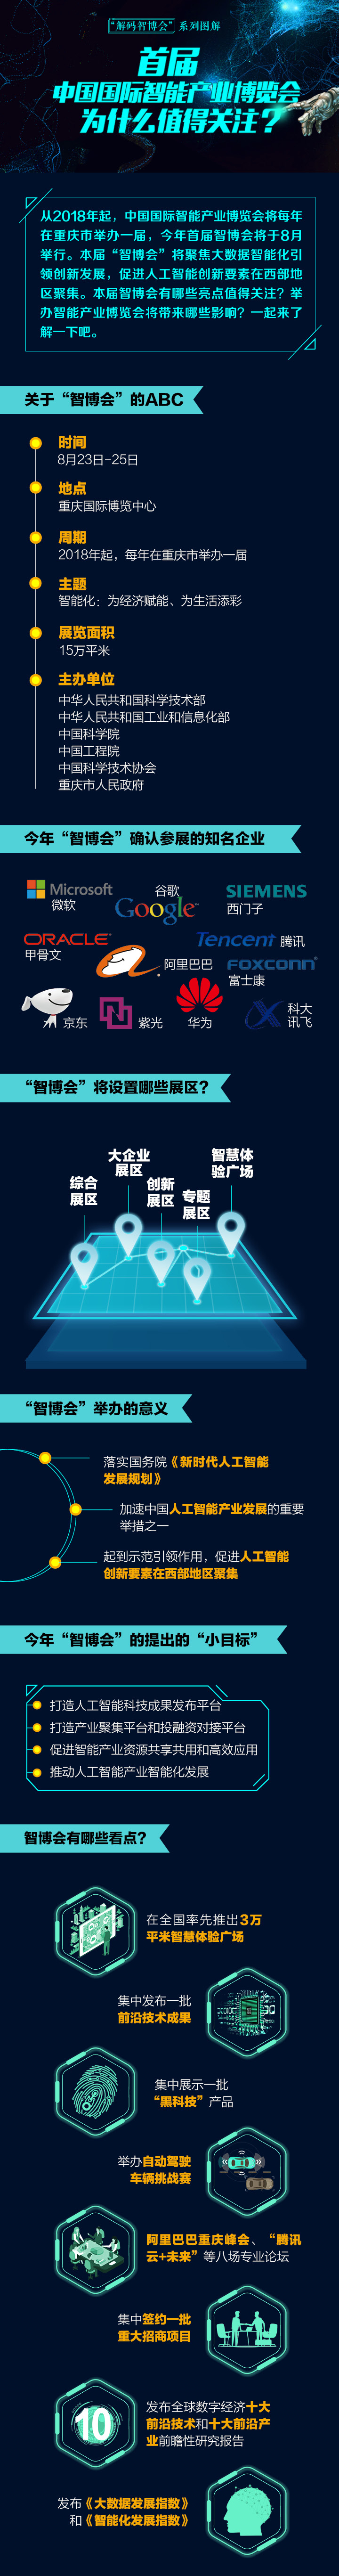 【智博会专题 焦点图】首届中国国际智能产业博览会为什么值得关注